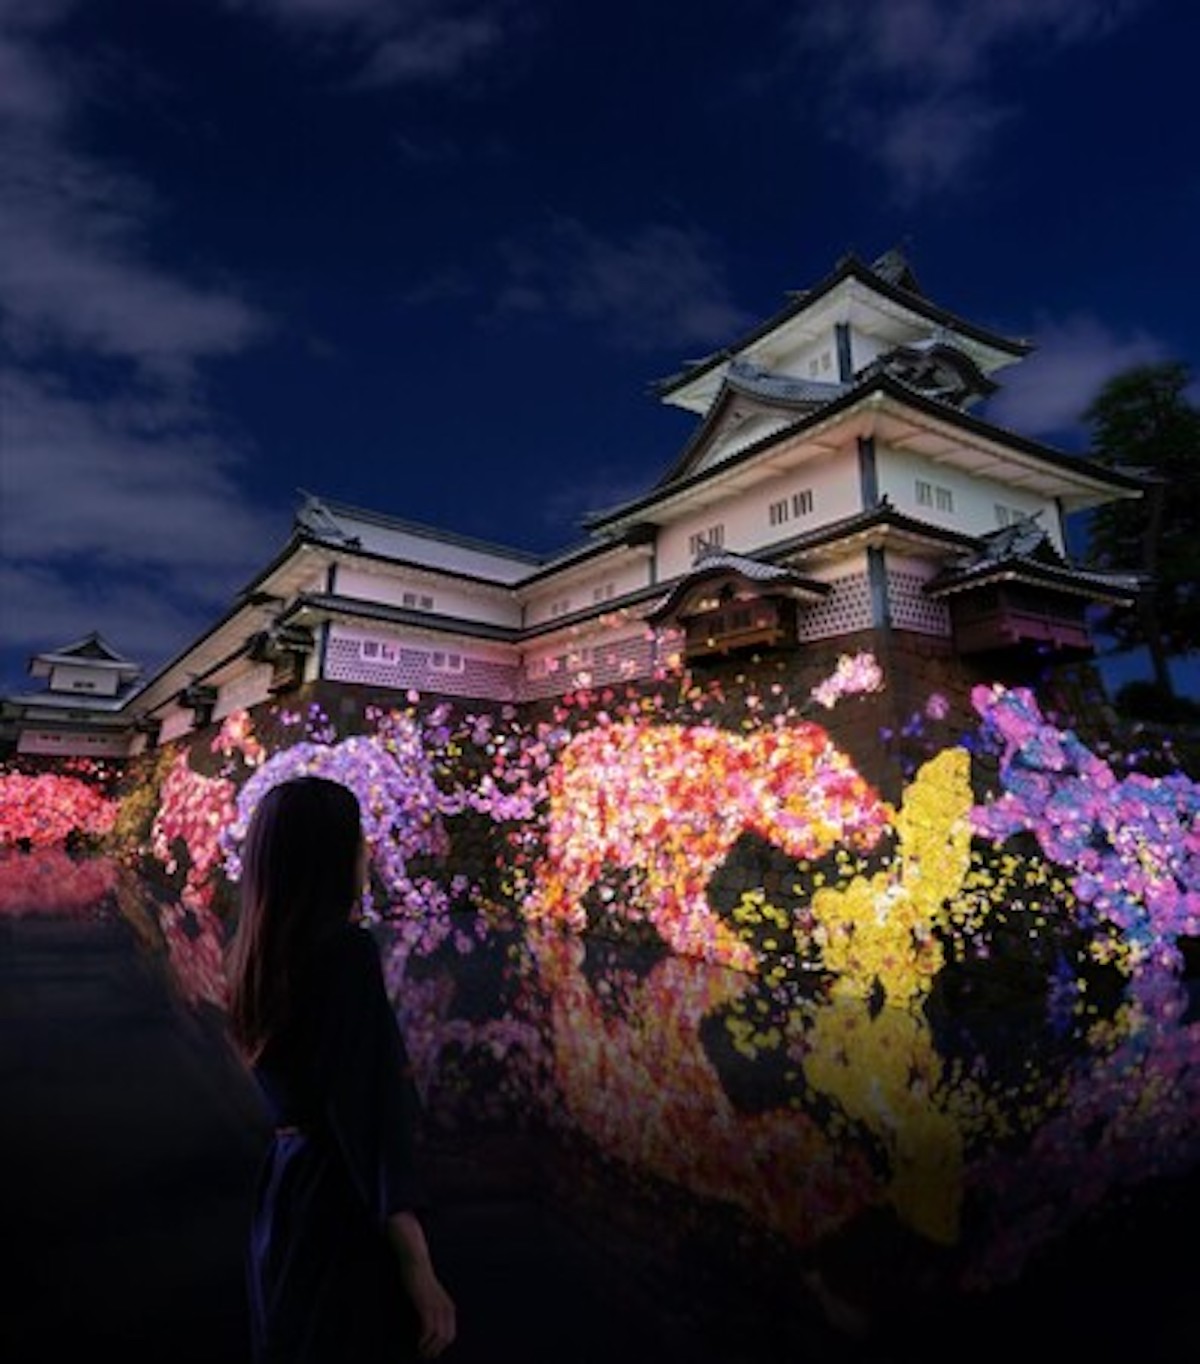 チームラボ、石川・金沢城公園で「チームラボ 金沢城 光の祭」開催へ　人々の存在によって変化するアート空間